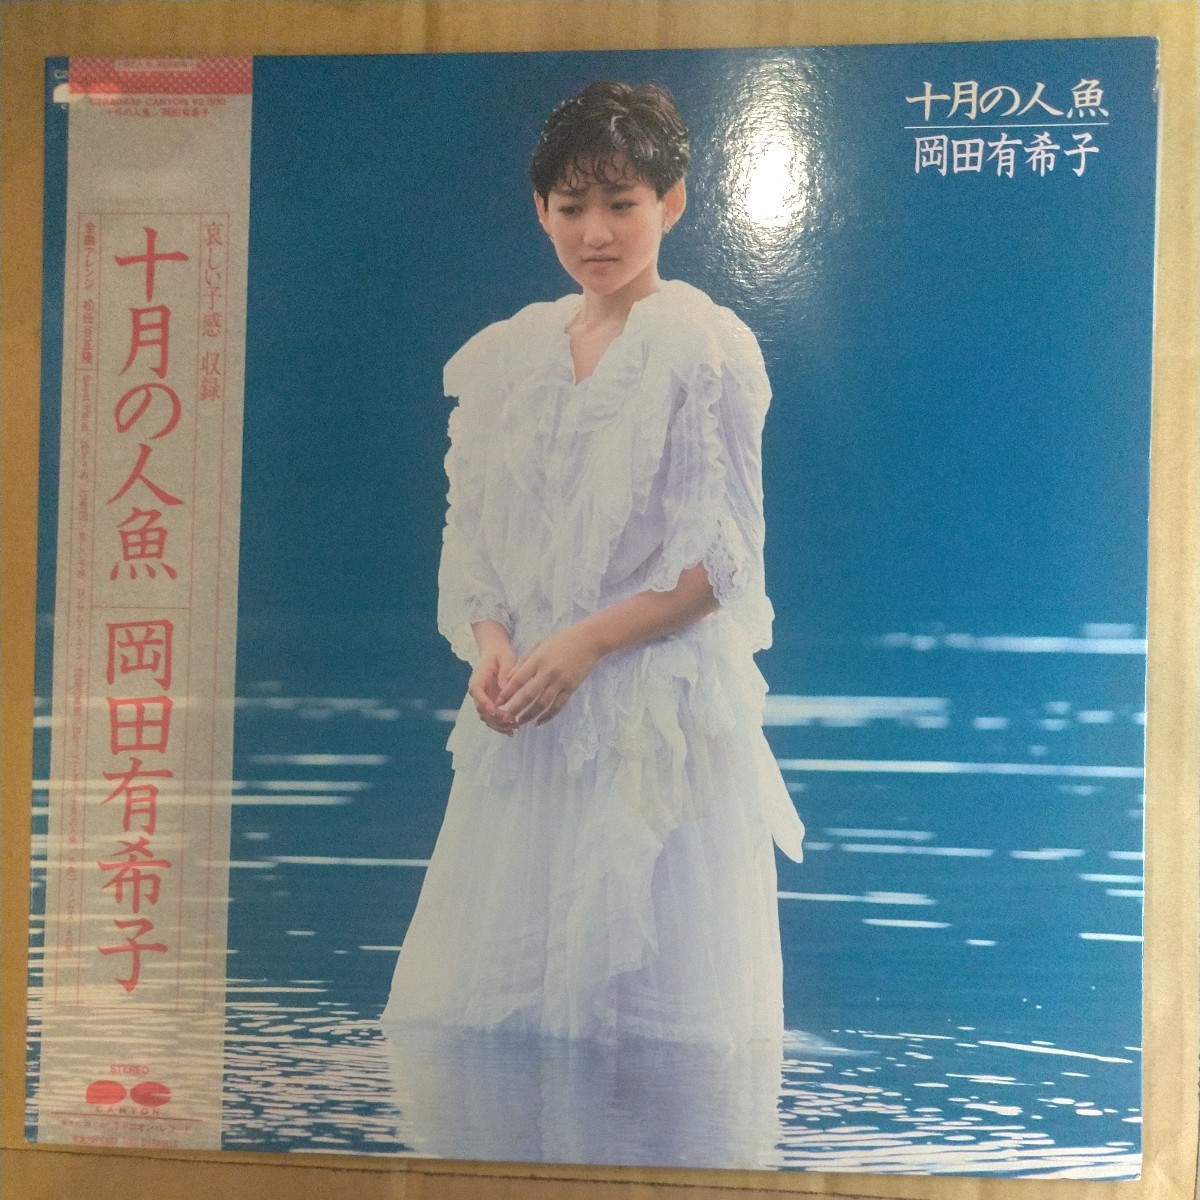 岡田有希子「十月の人魚」LP 1985年 3rd album★★アイドル 和モノシティポップユッコ_画像1